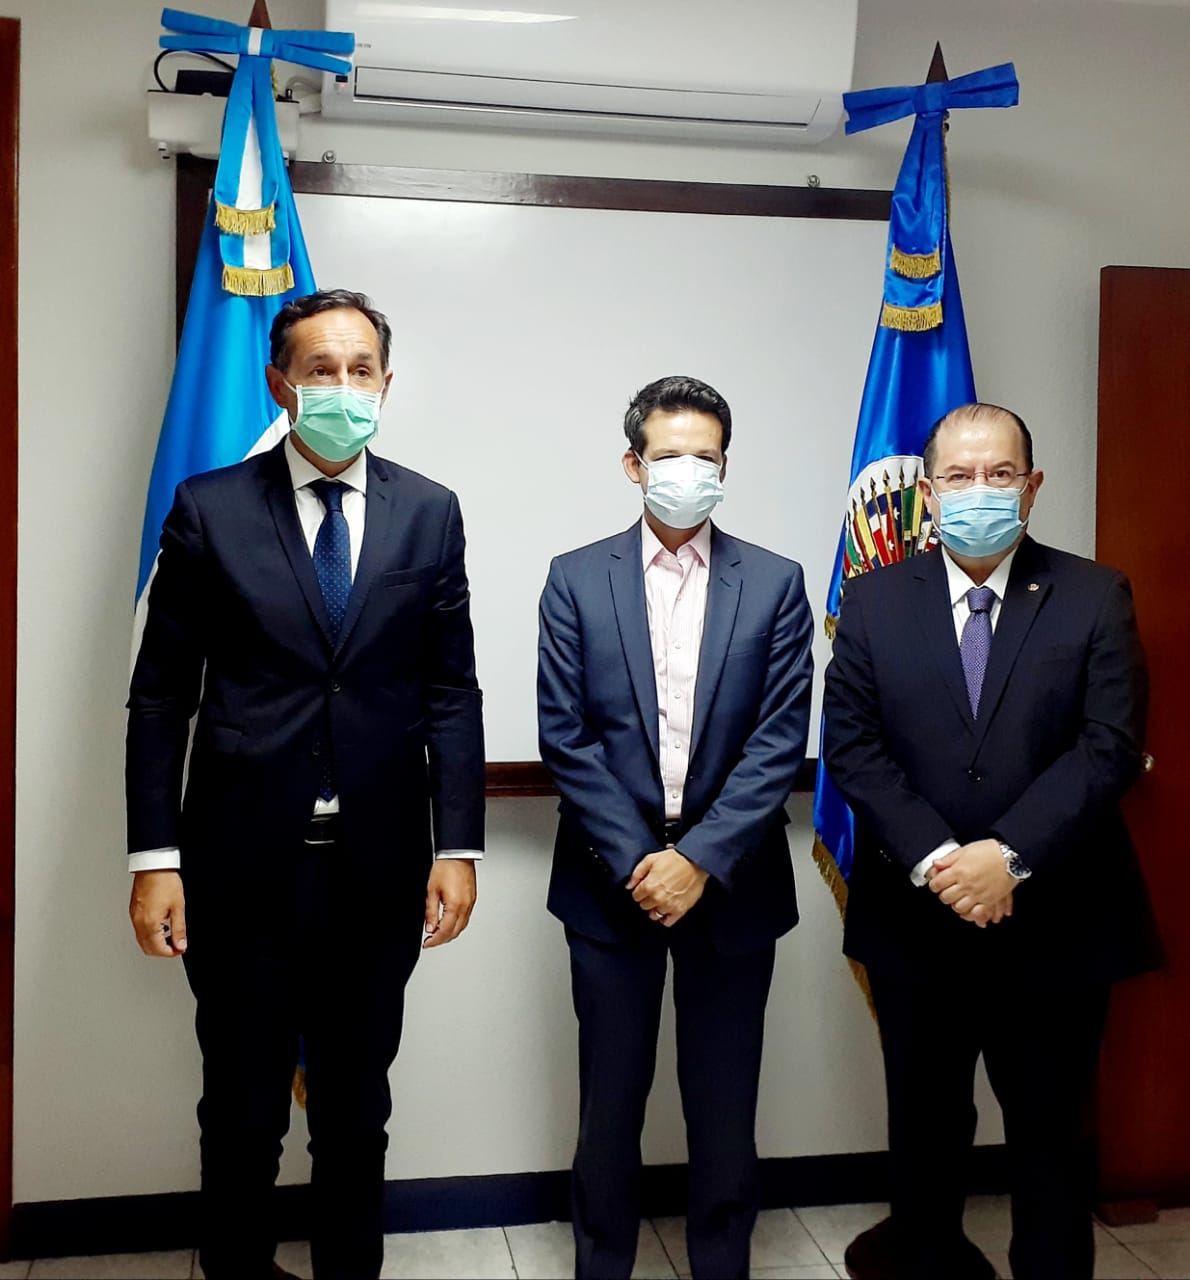 La Misión de la OEA en Guatemala enviada por el S. G. Luis Almagro y presidida por el Emb. Fulvio Pompeo continúa cumpliendo su agenda de reuniones con todos los sectores del país. Se reunió hoy con el Presidente del Diario La Hora, Dr. Pedro Pablo Marroquín.(30 de noviembre de 2020)